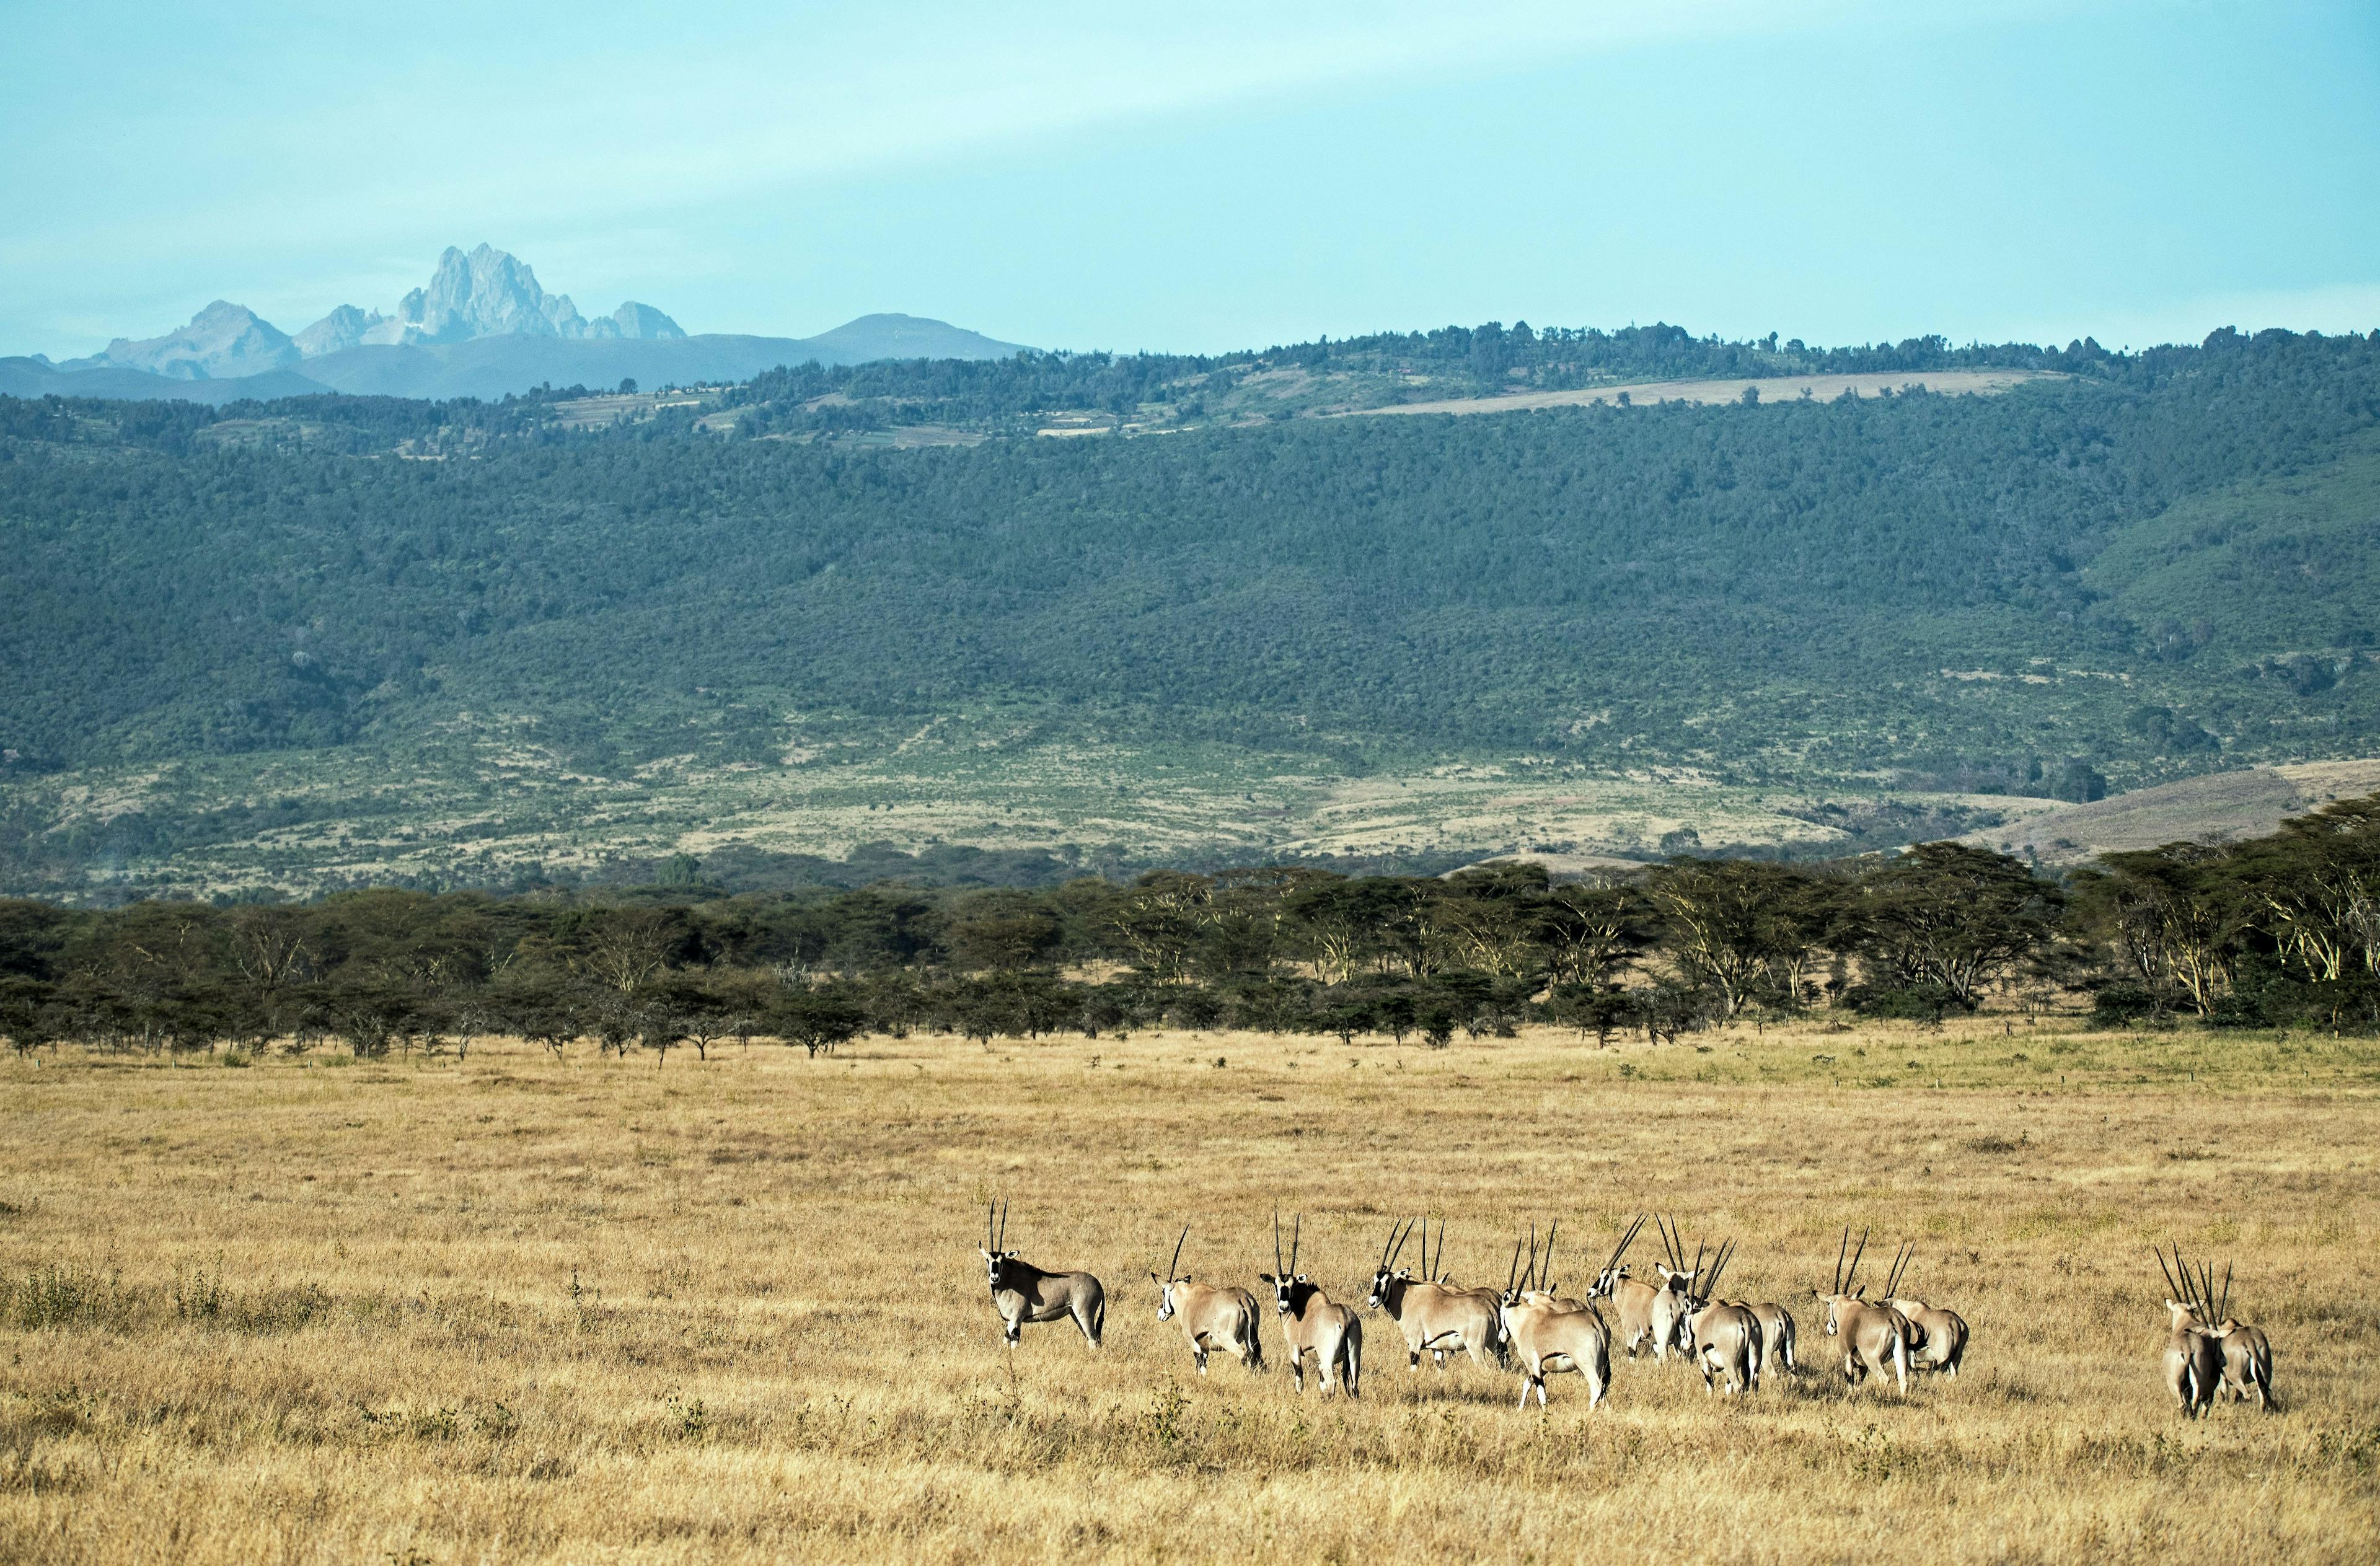 Oryx in Mount Kenya National Park in Kenya.